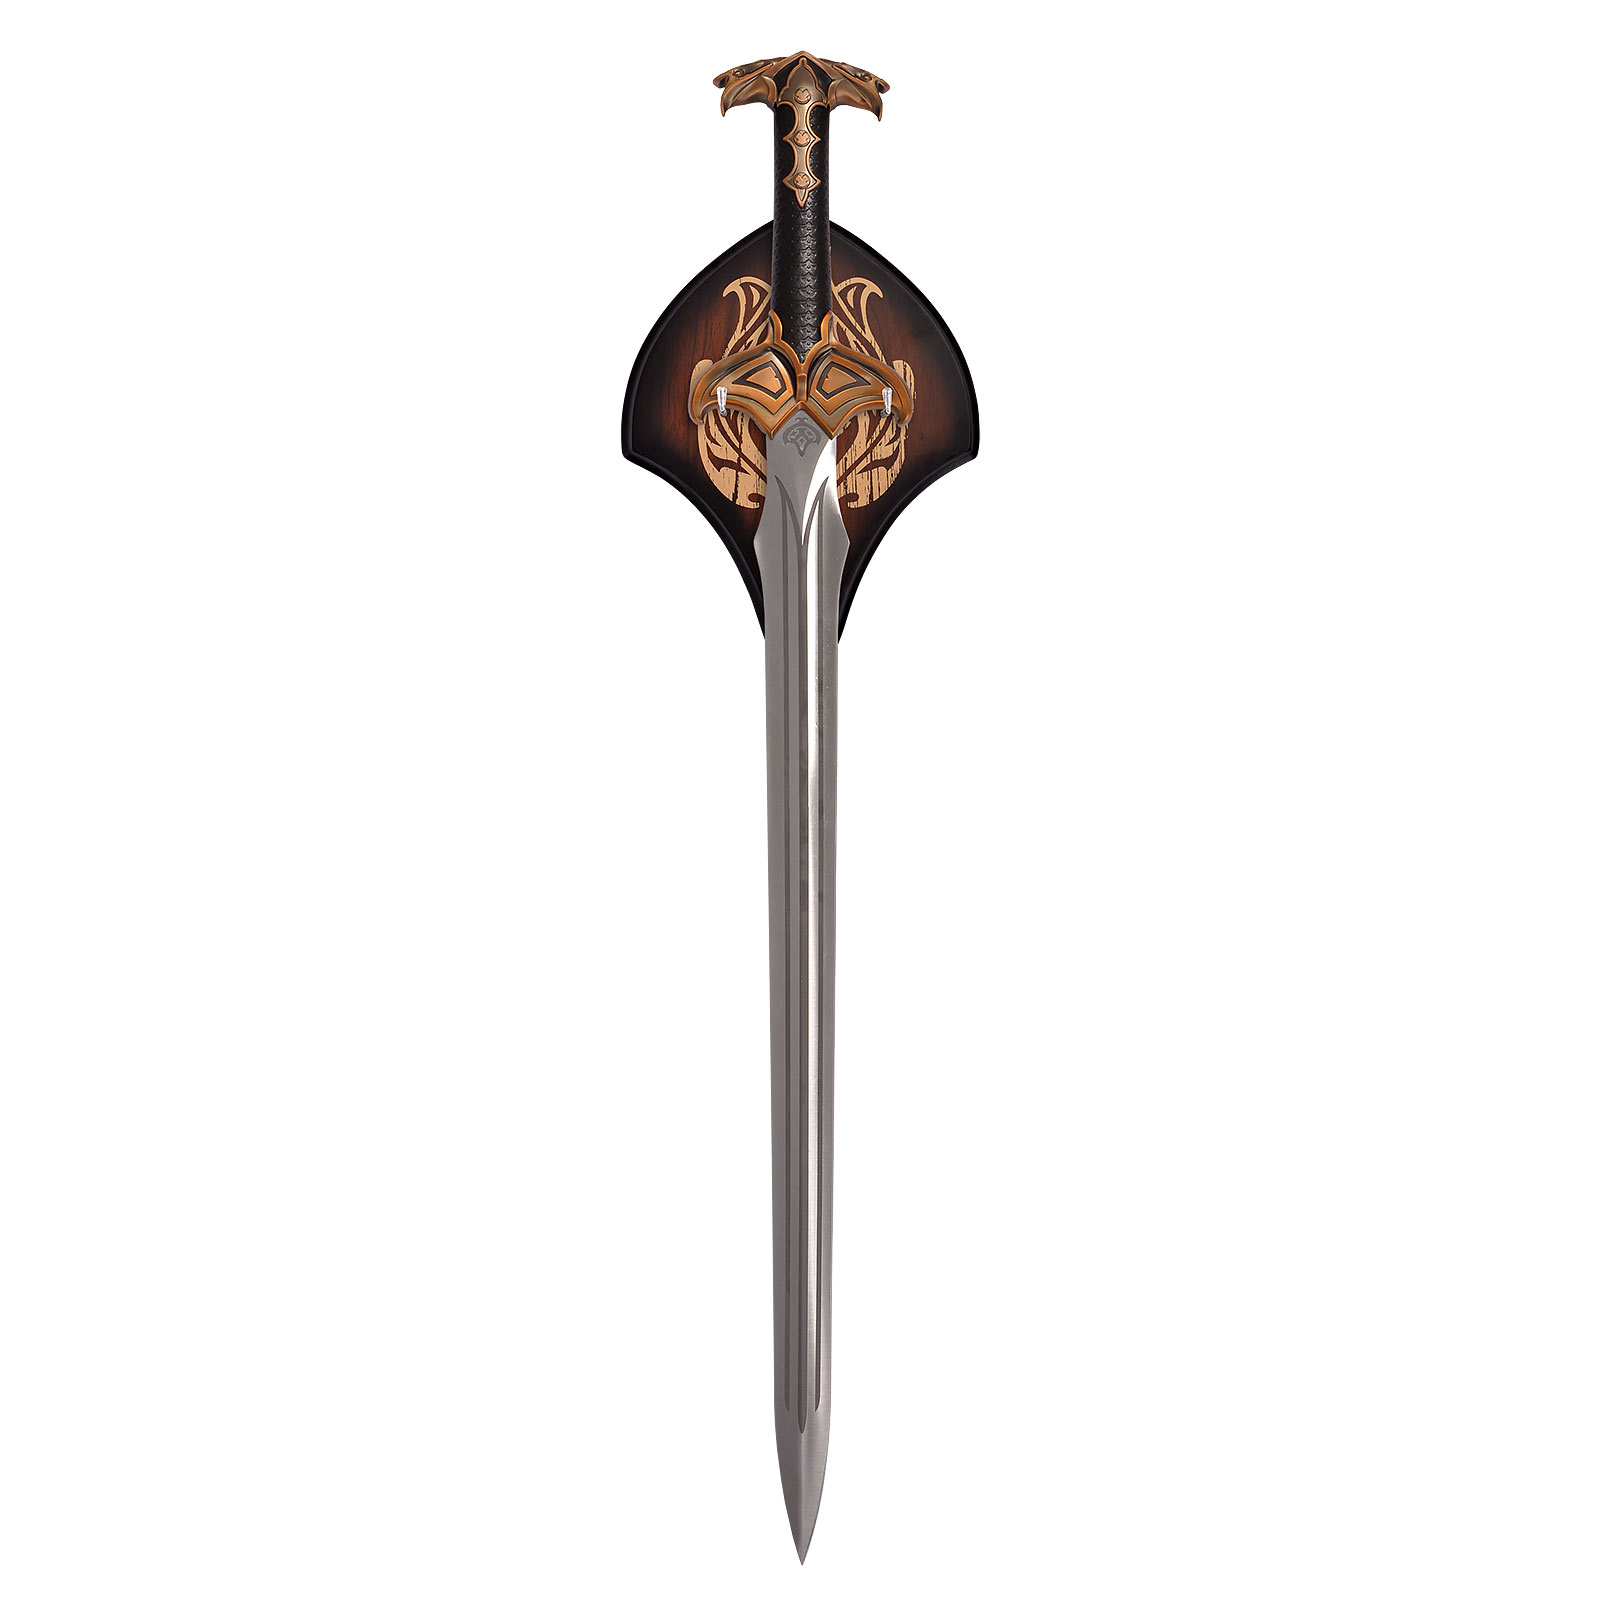 Der Hobbit - Bards Schwert